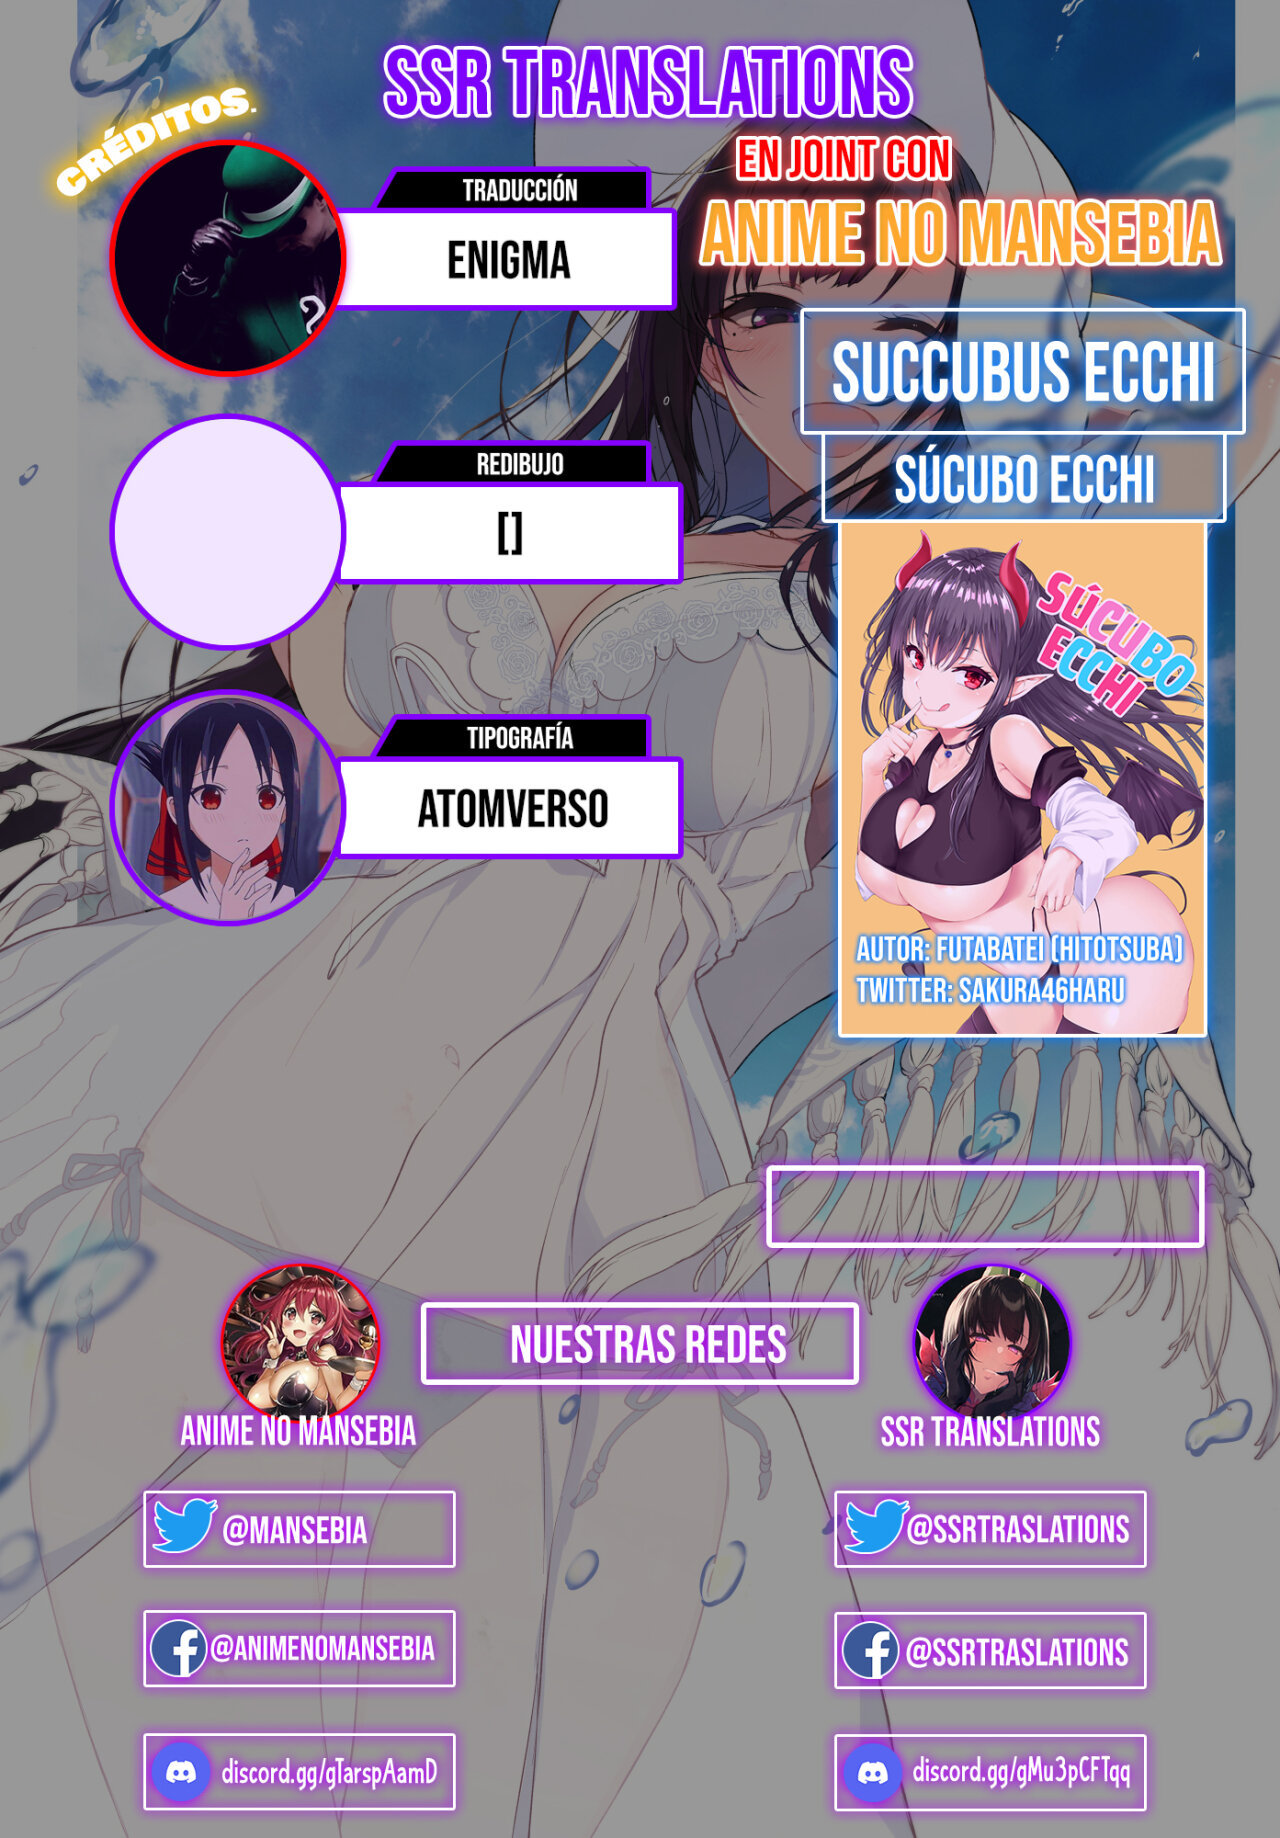 Sucubo Ecchi (Succubus Ecchi) - 16